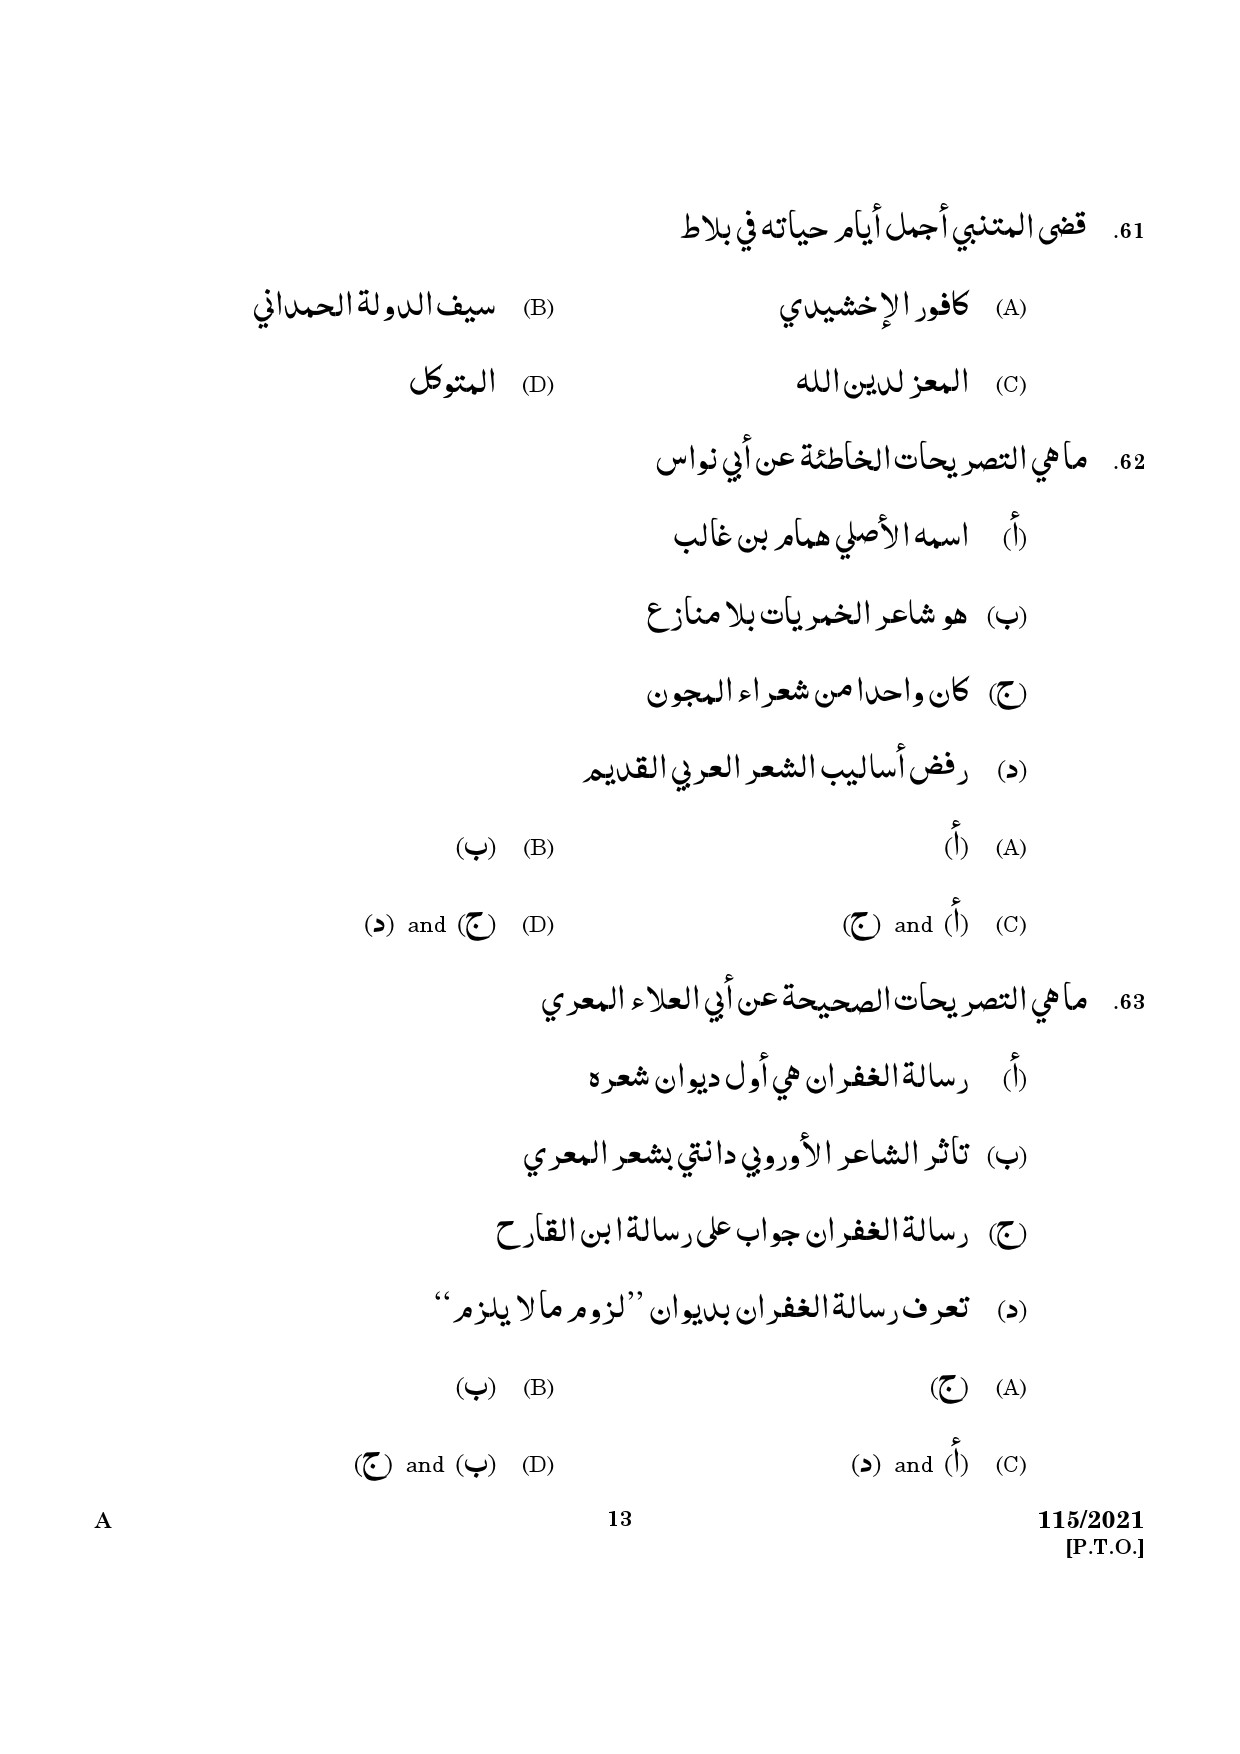 KPSC Part Time Junior Language Teacher Arabic Exam 2021 Code 1152021 11